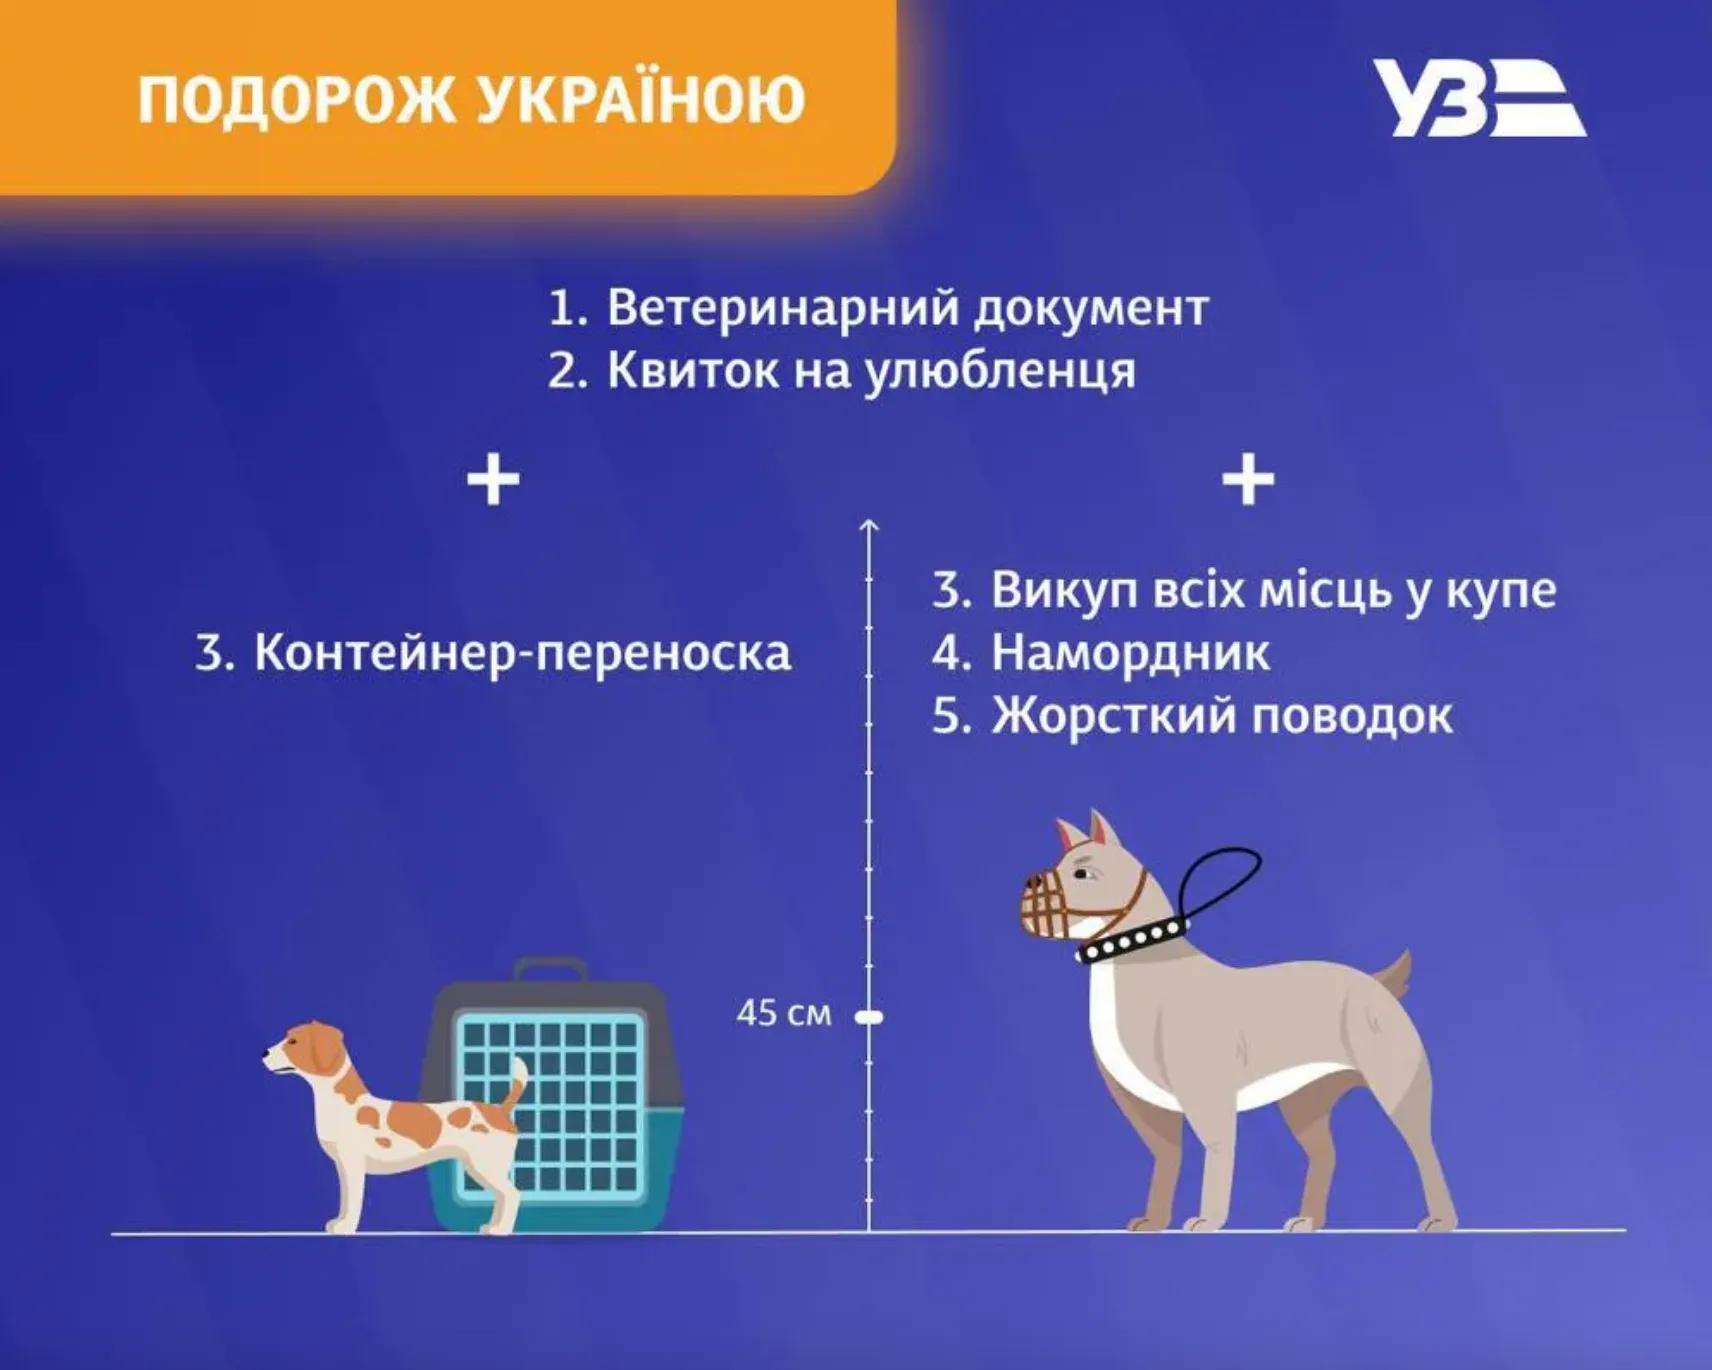 Какие документы нужны для путешествия с животными по Украине